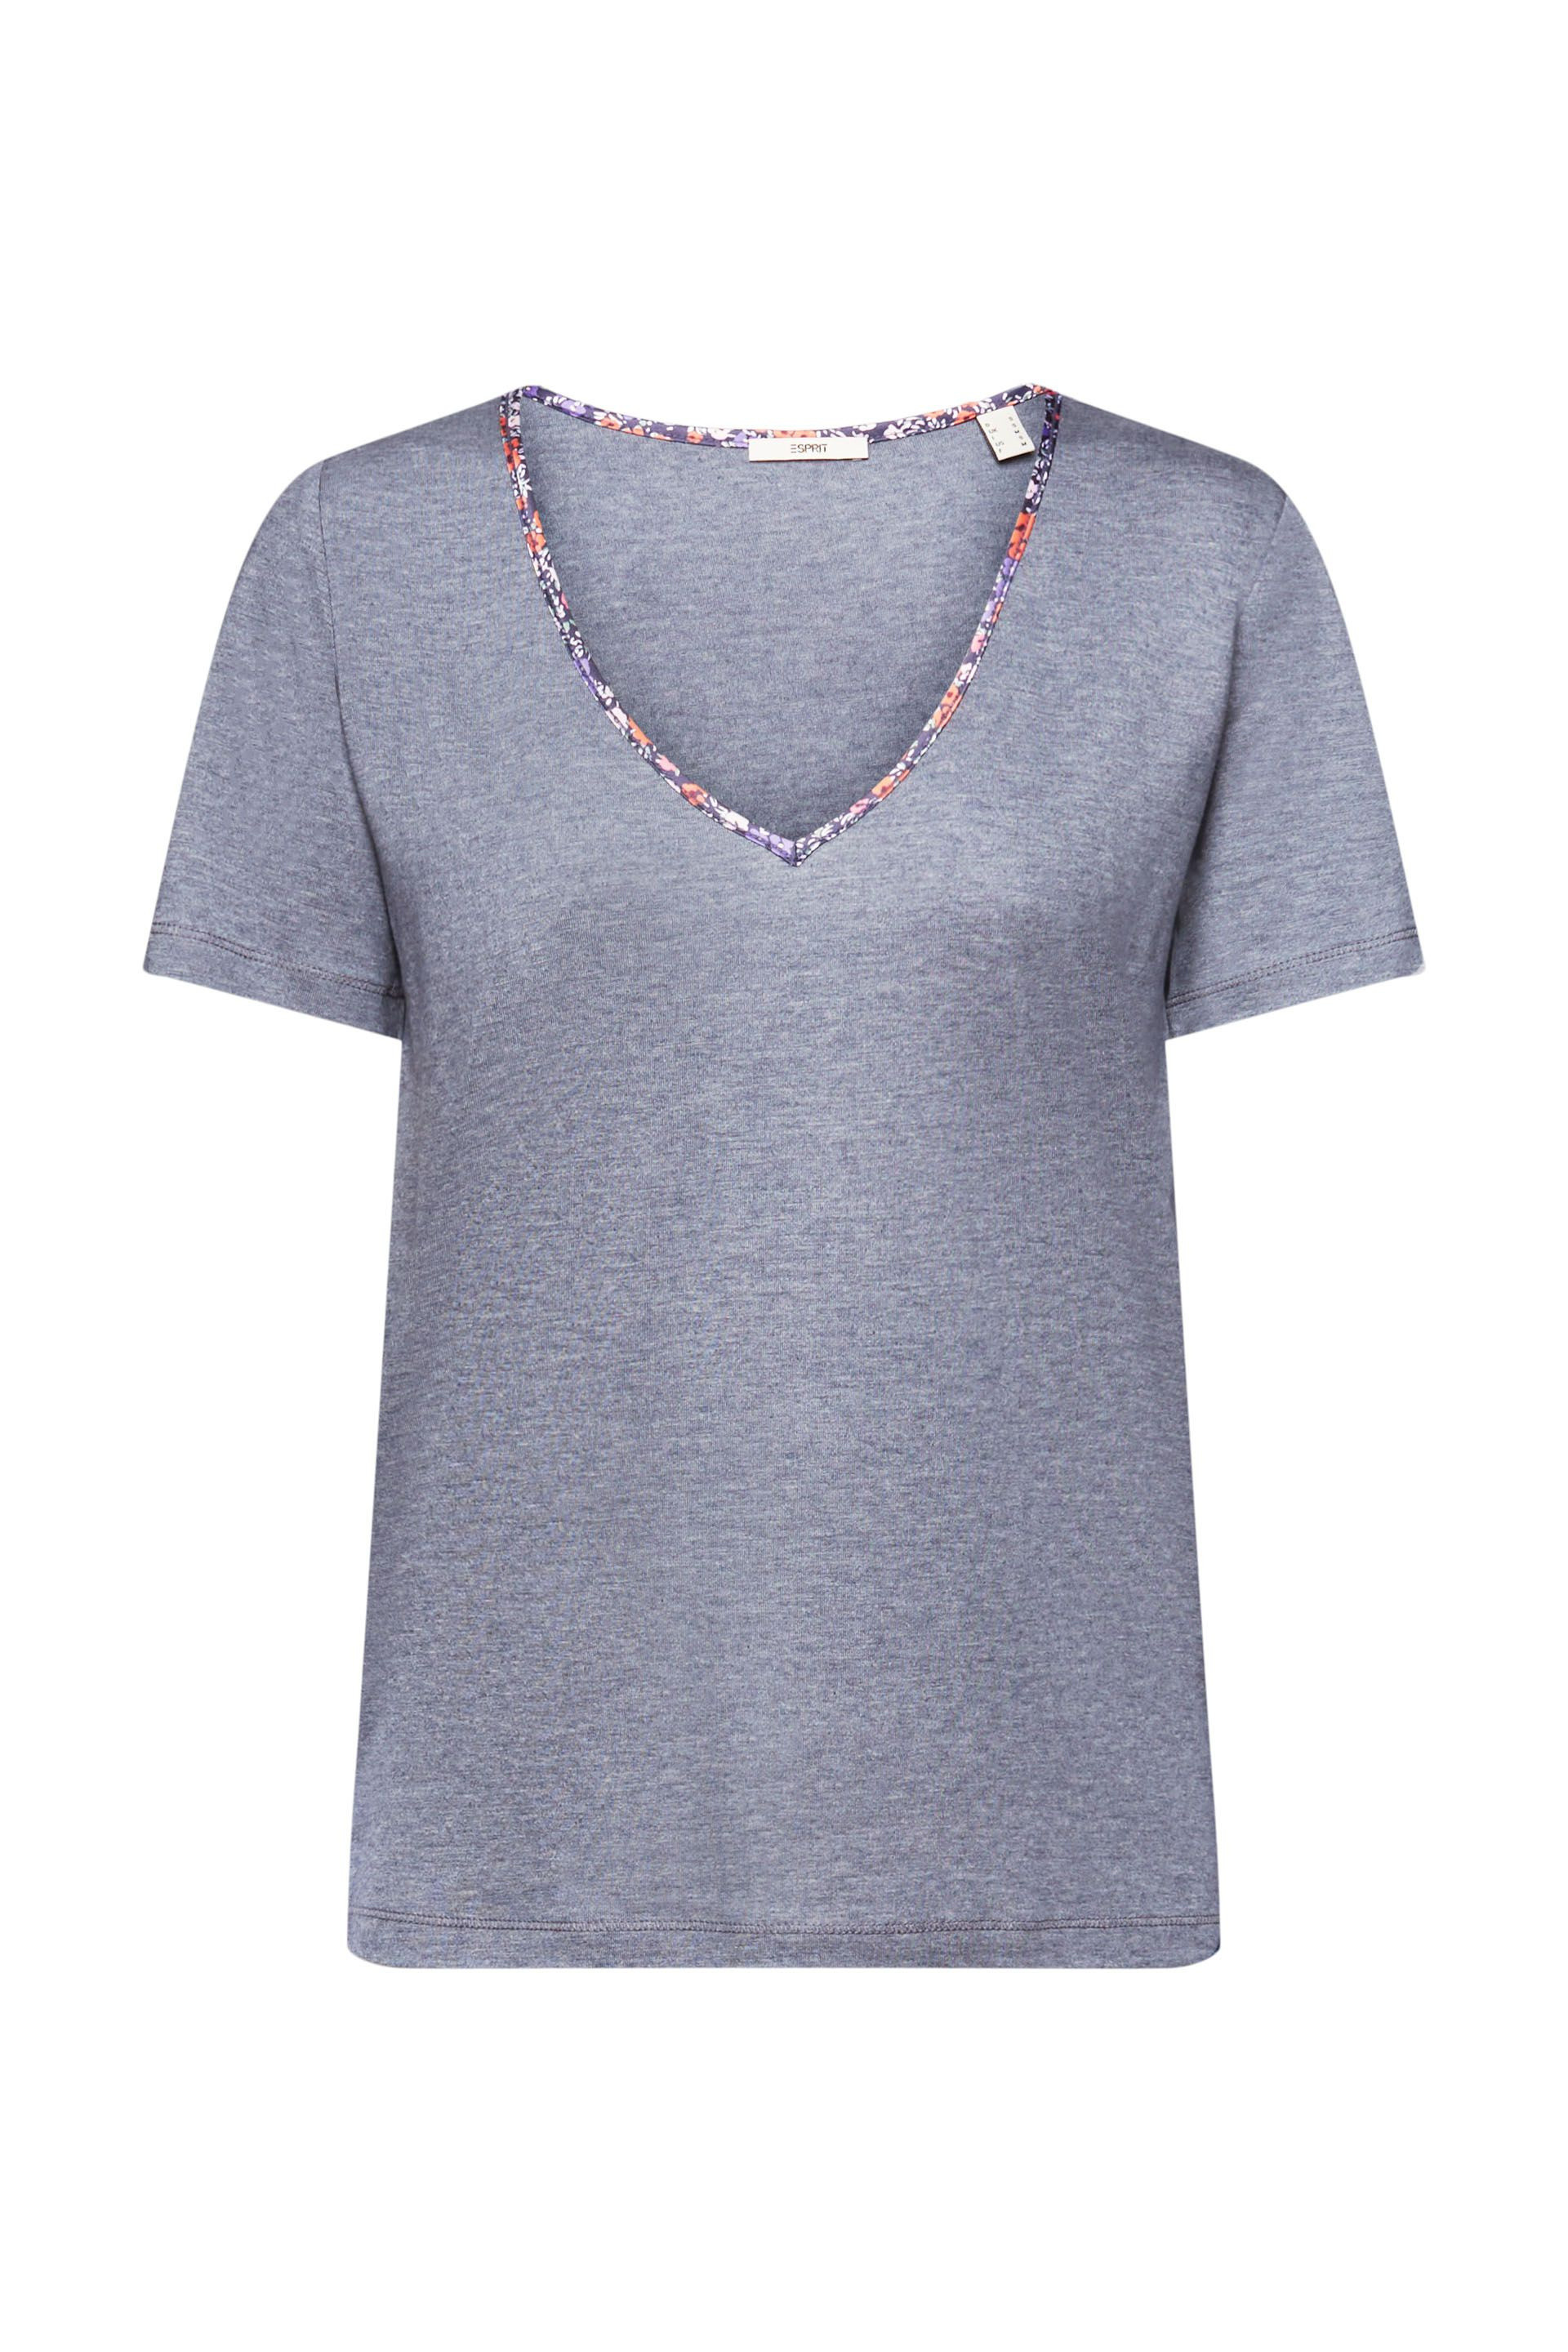 Esprit - T-shirt con scollo a V floreale, Arancione chiaro, large image number 0